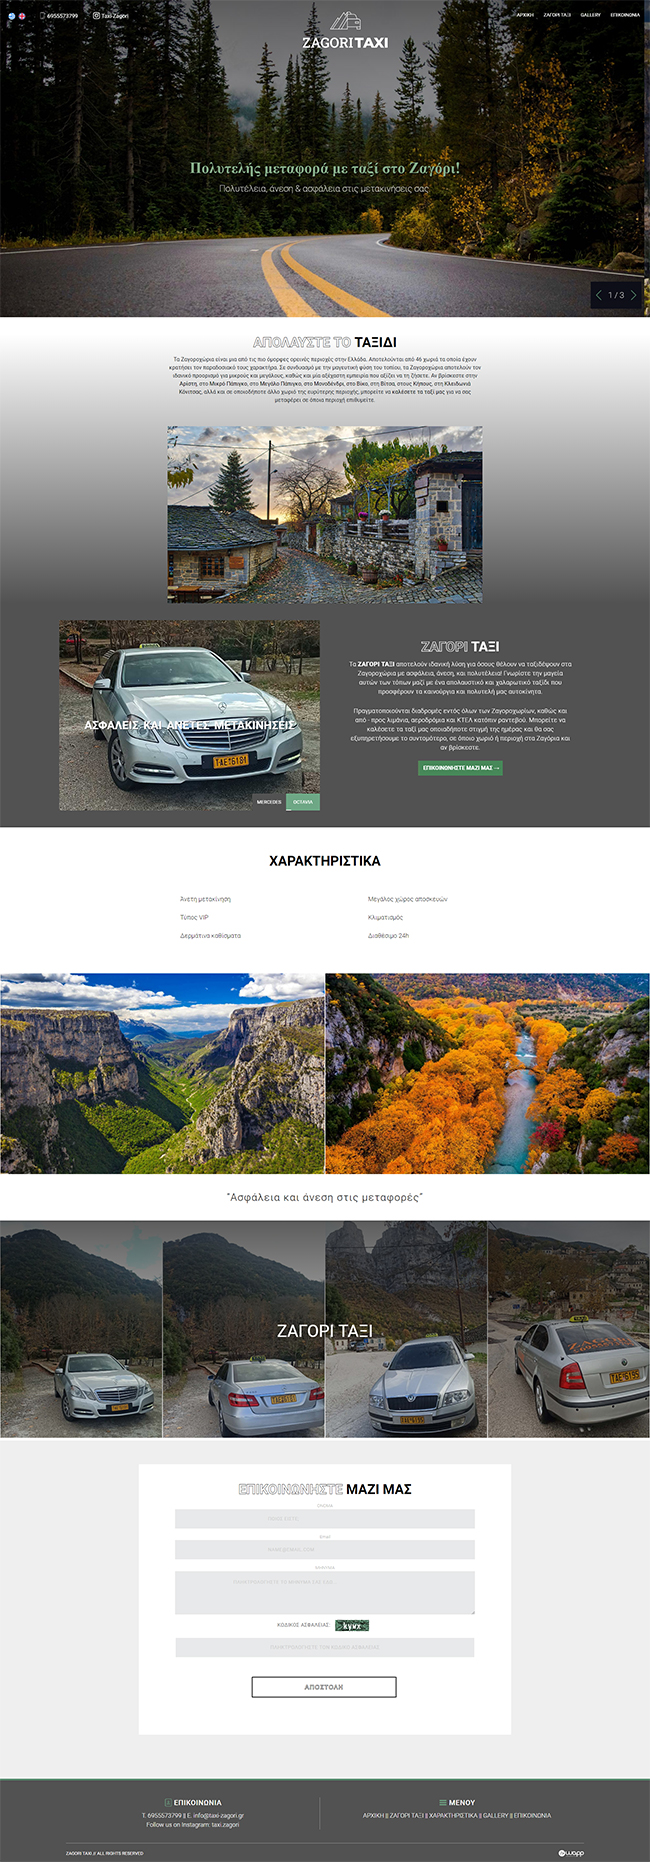 Responsive website for Zagori Taxi